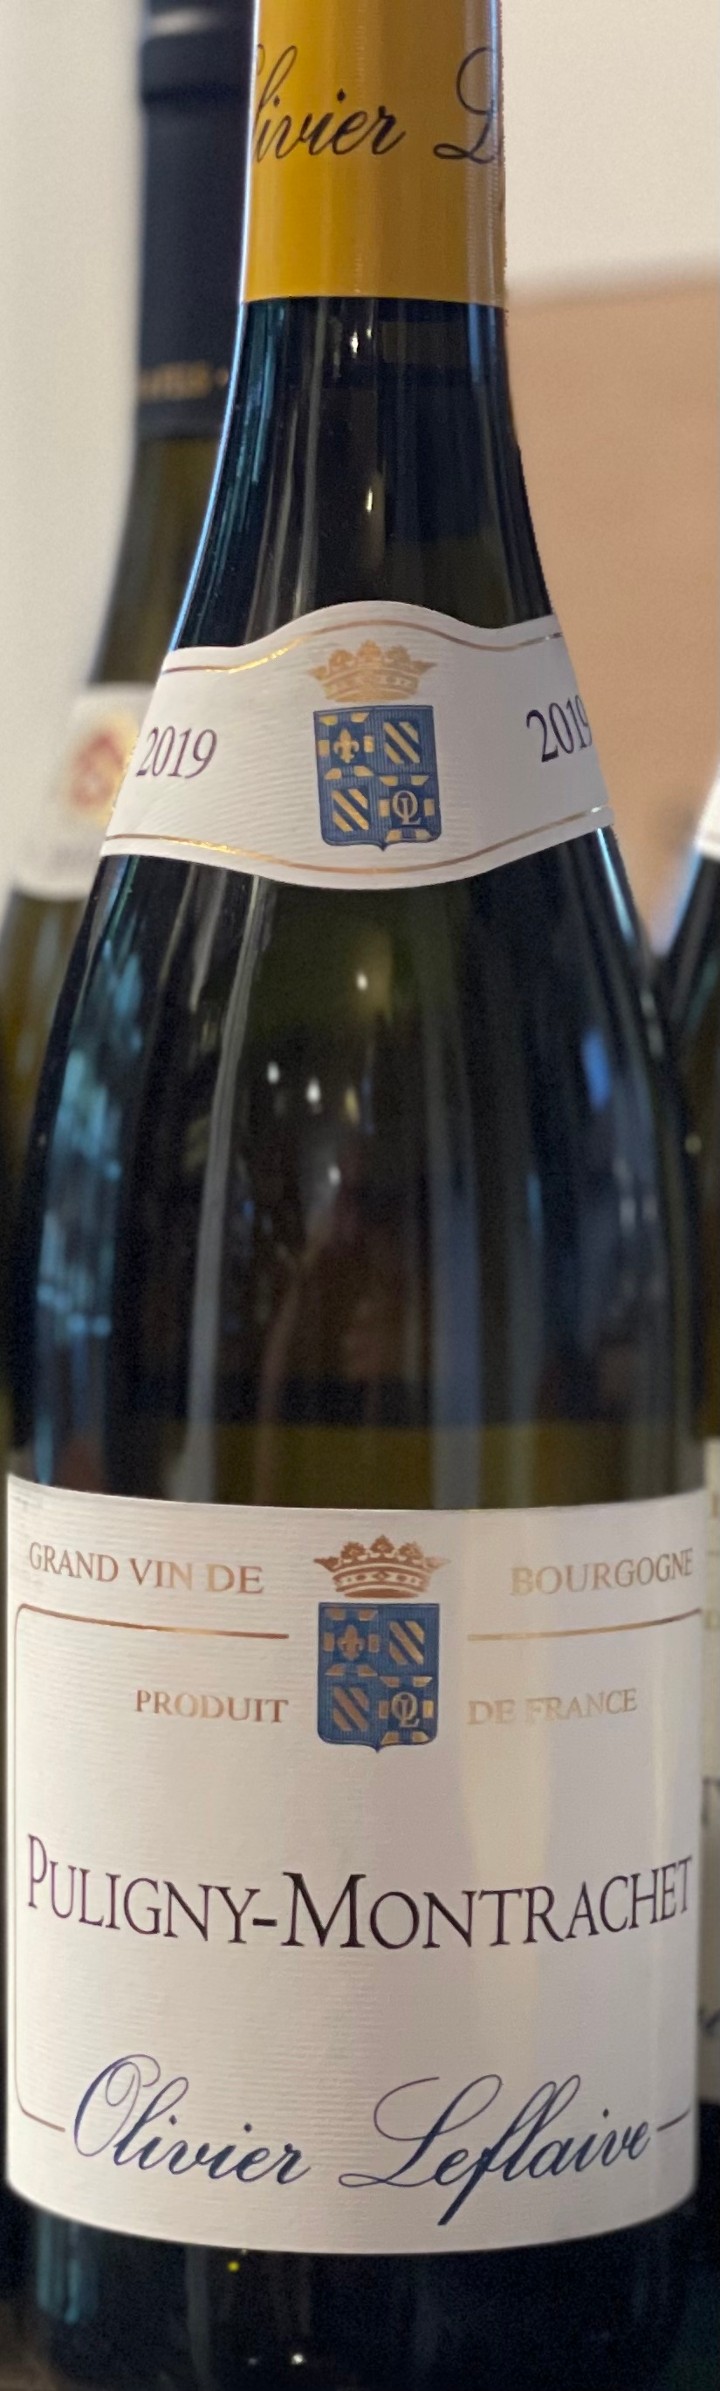 Olivier Leflaive Puligny- Montrachet Grand Vin 2019